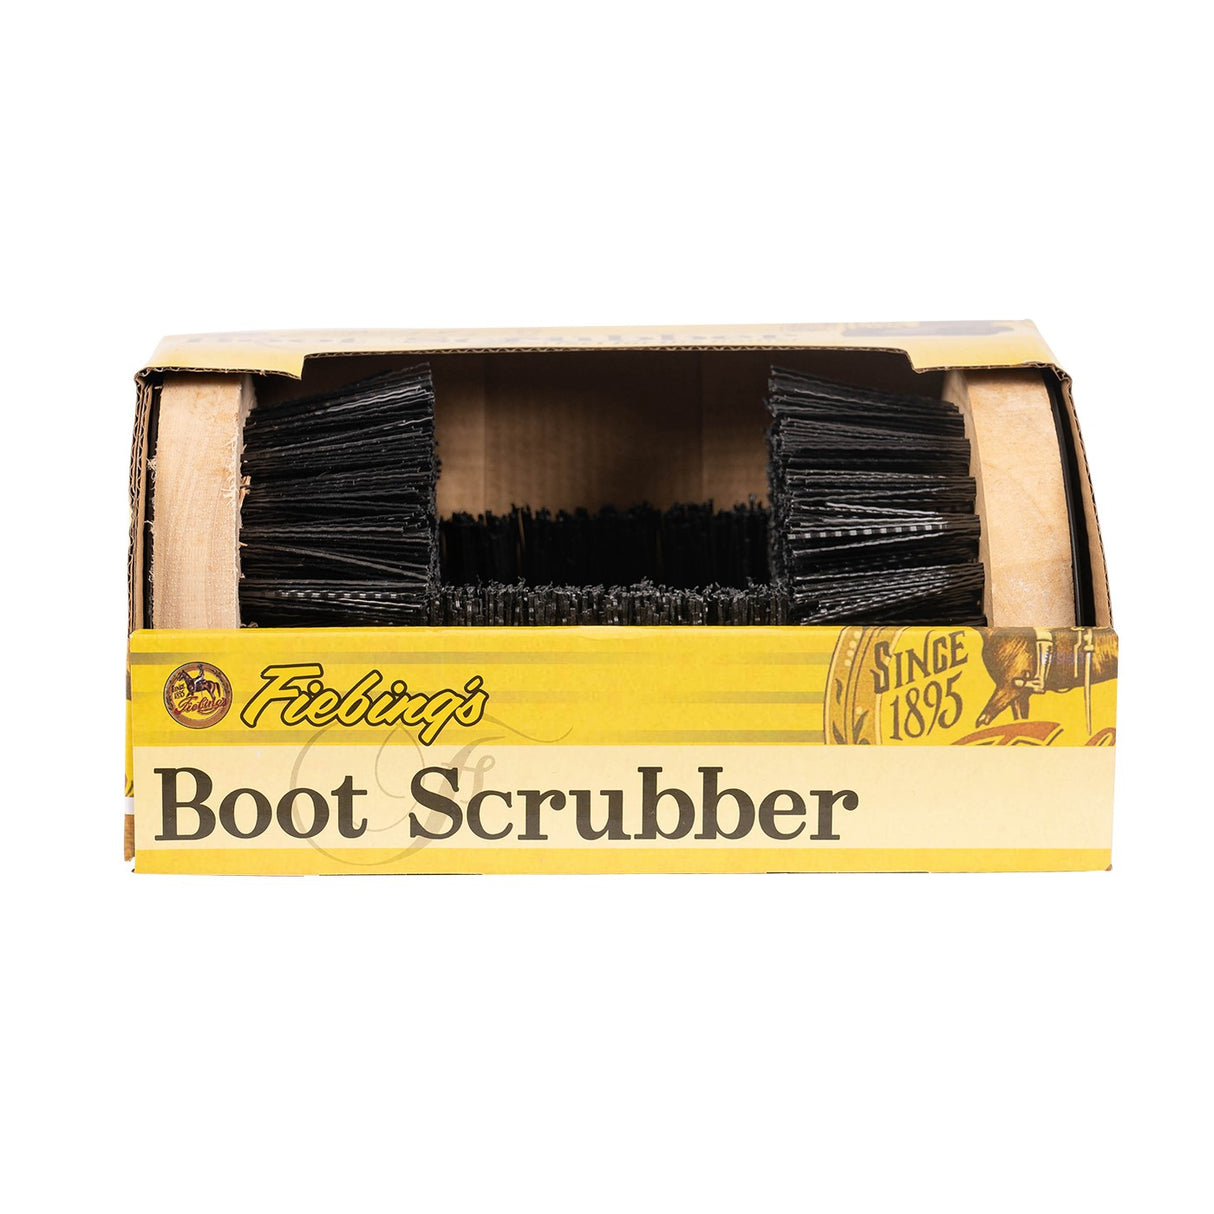 Fiebing's Boot Scrubber